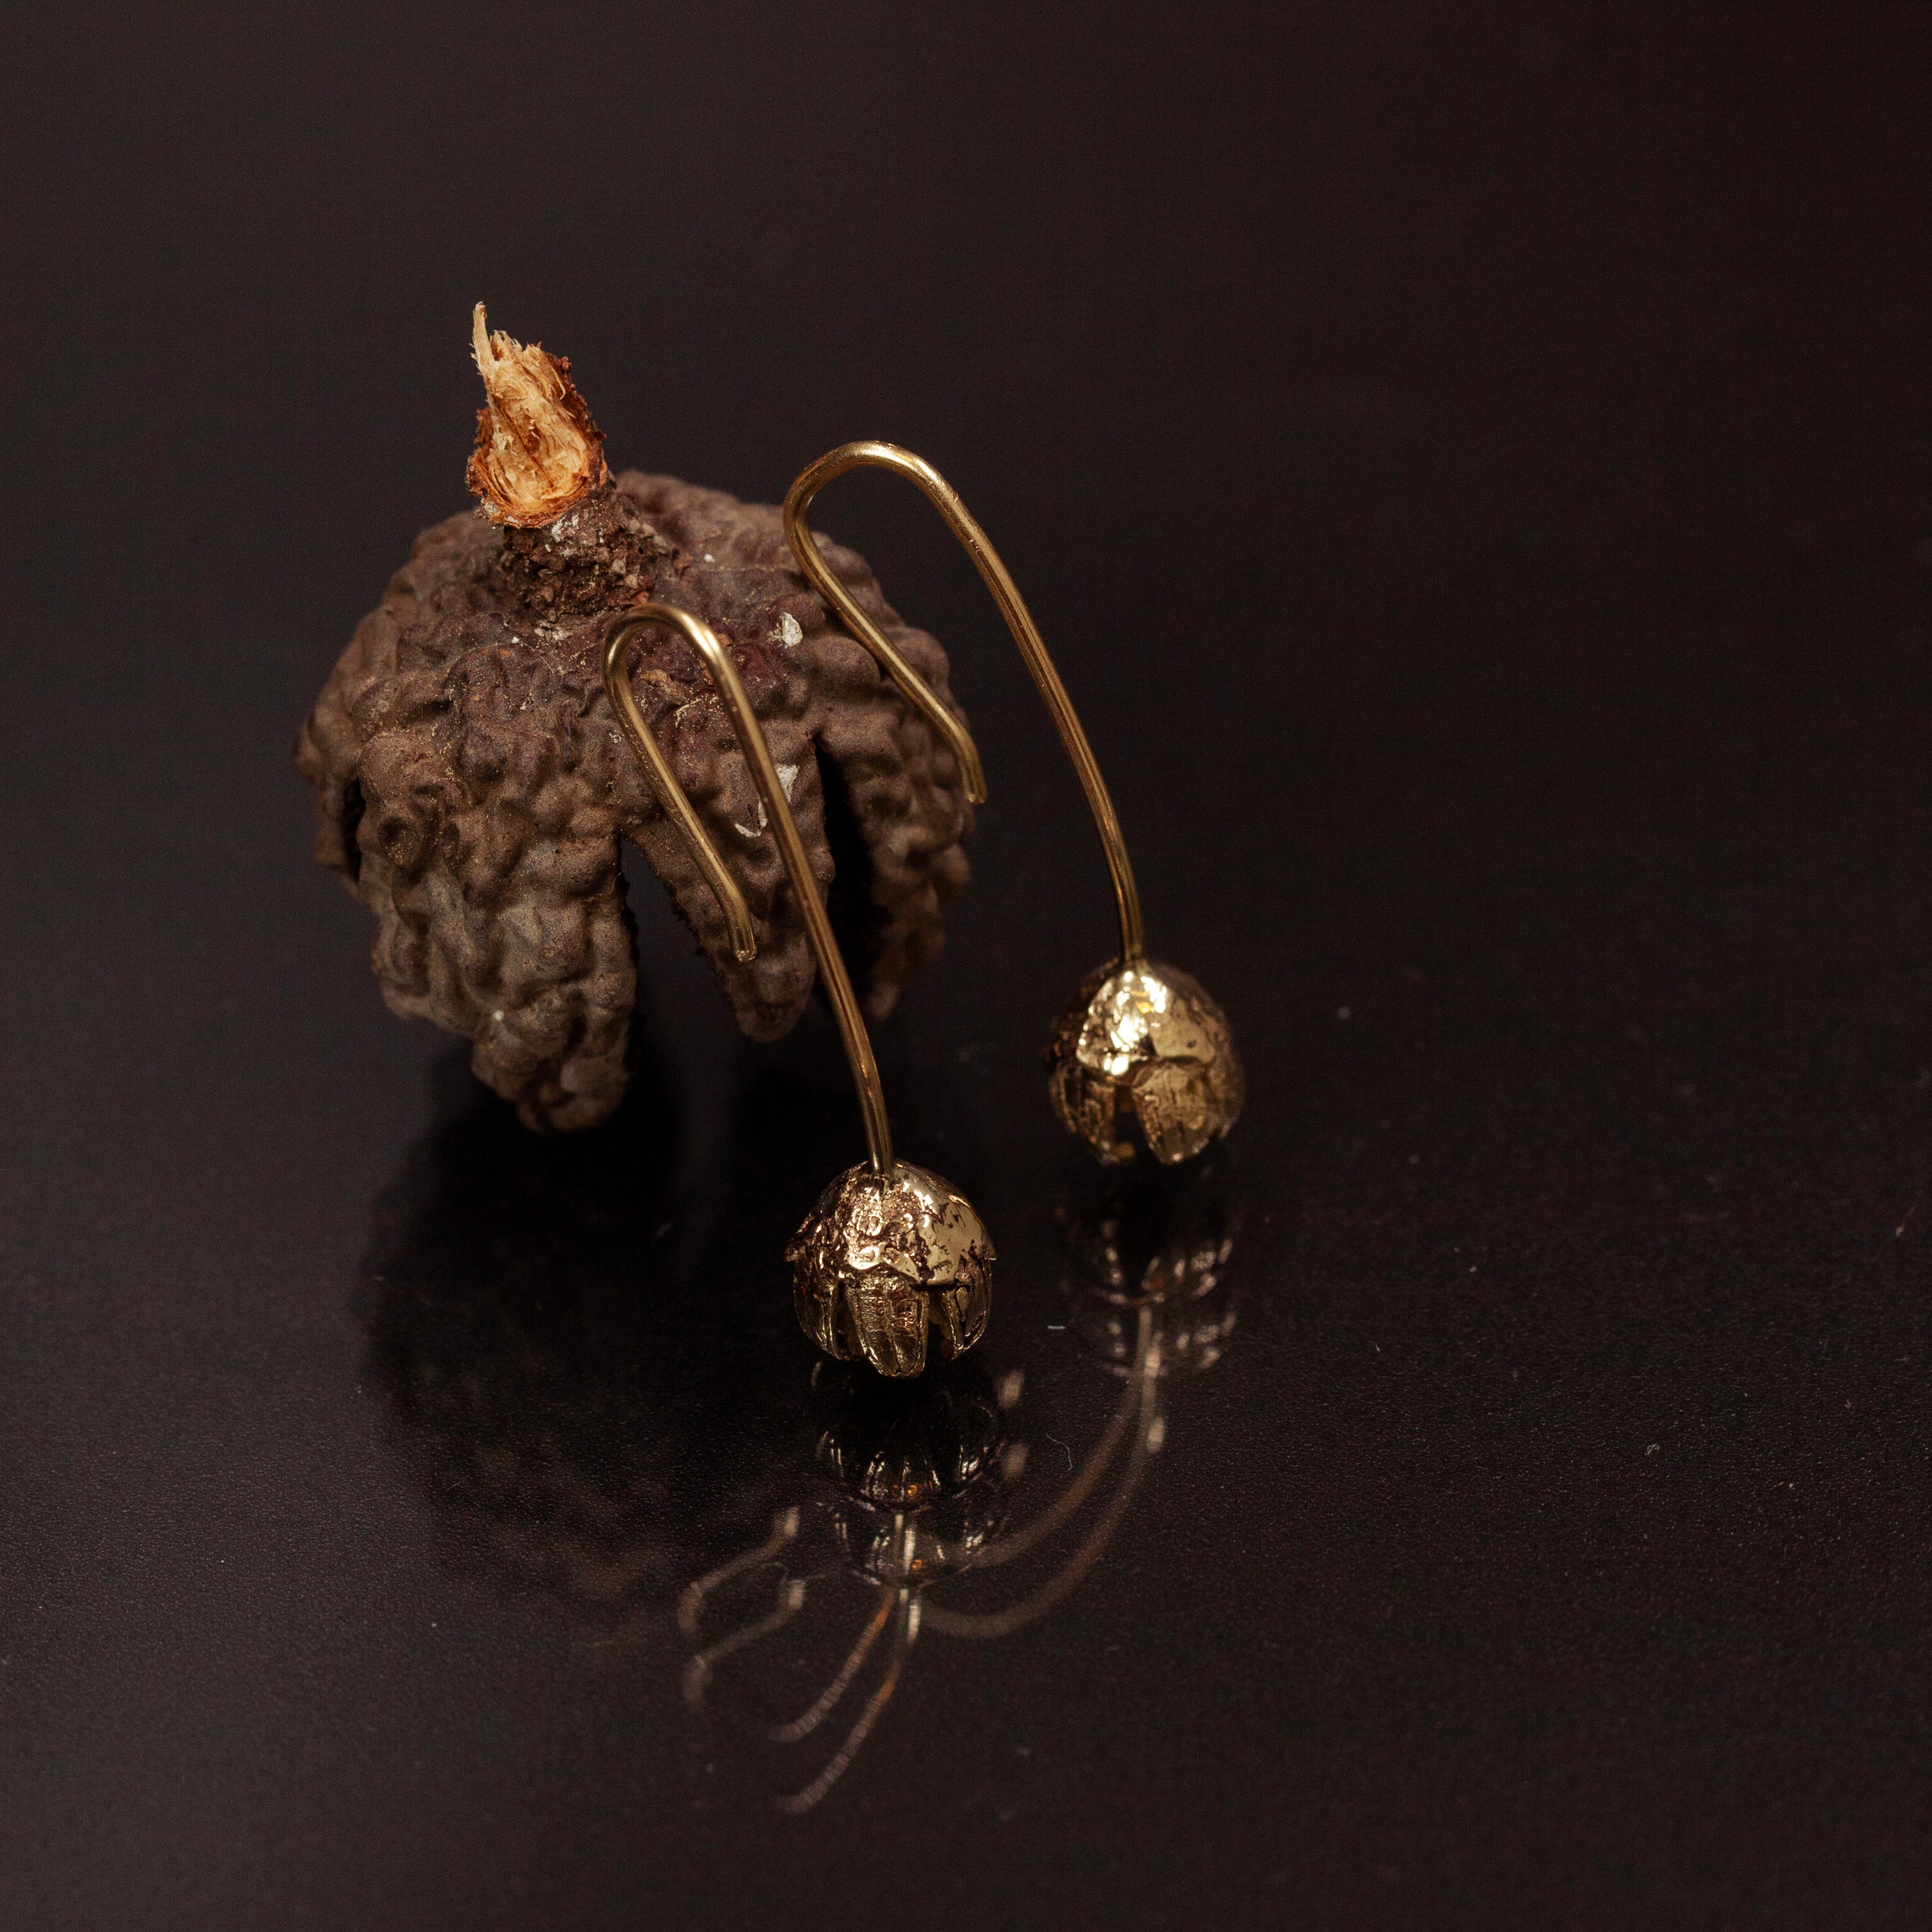 14k gold Bell flower earrings